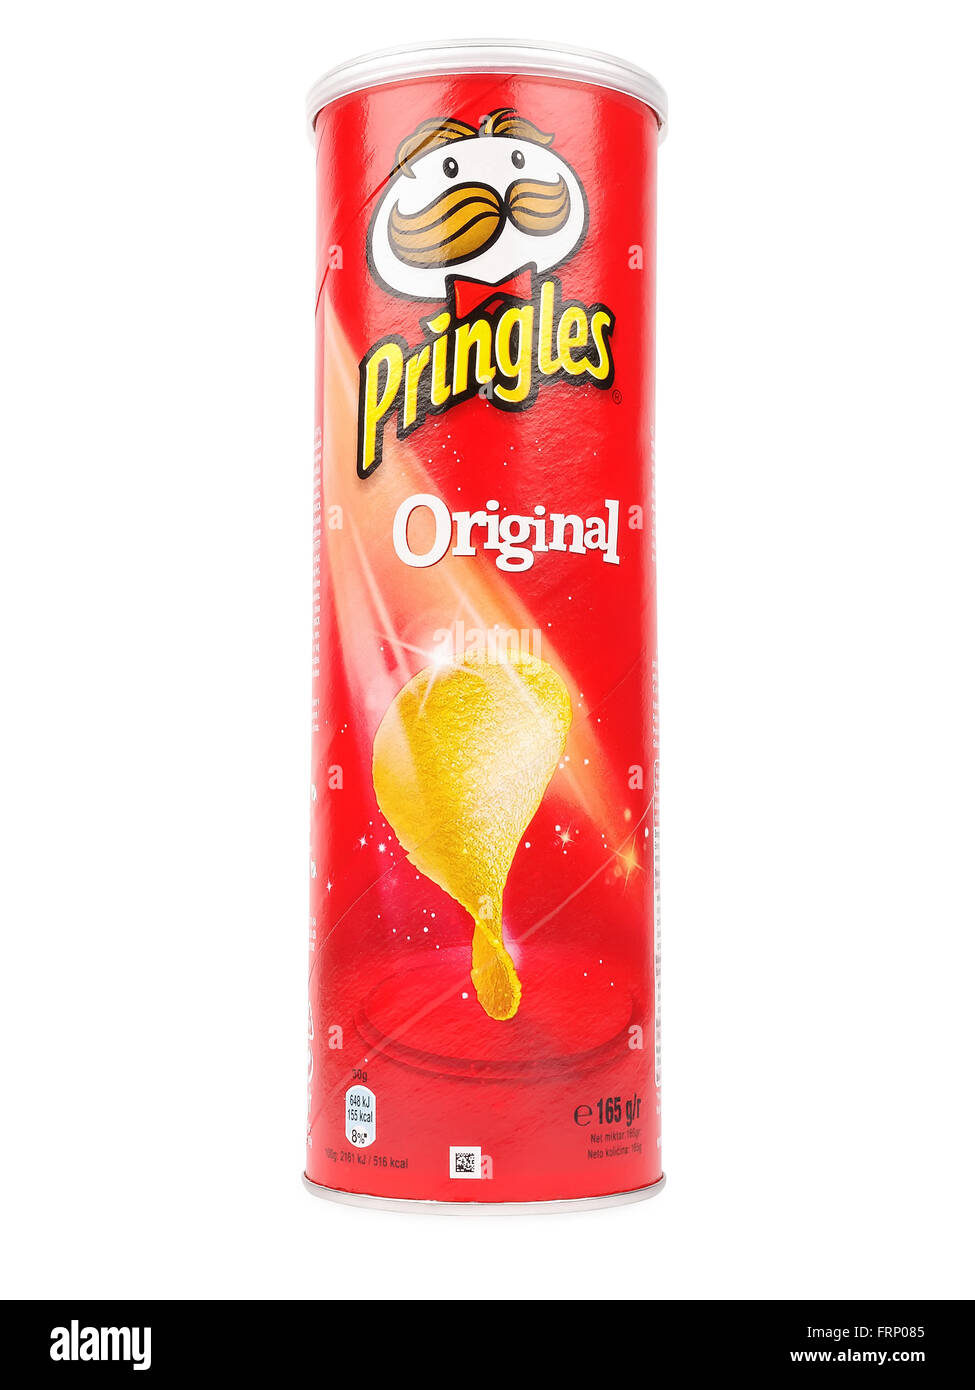 Patatas fritas Pringles Original, paquete de 165 gramos. Pringles es una marca de snack de patatas fritas. Foto de stock